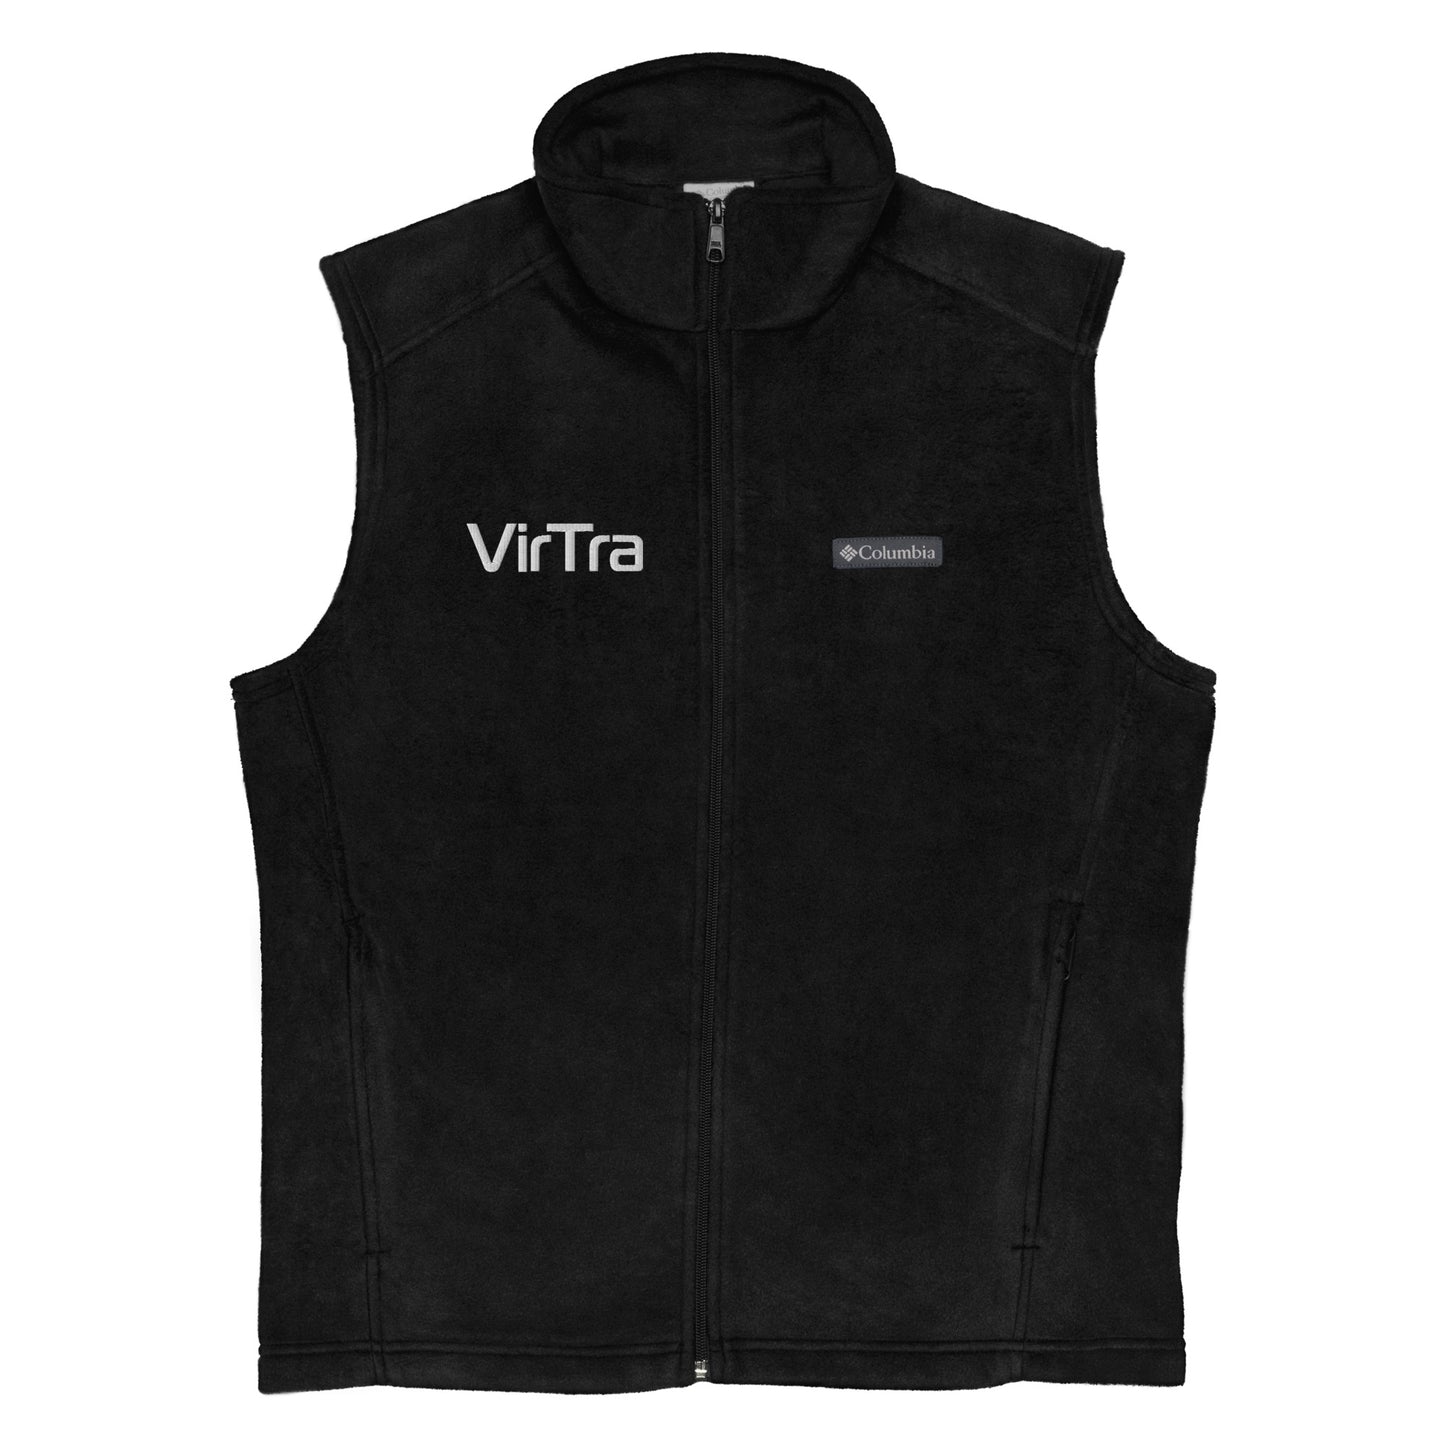 VirTra Columbia | Men's Zip-up Vest